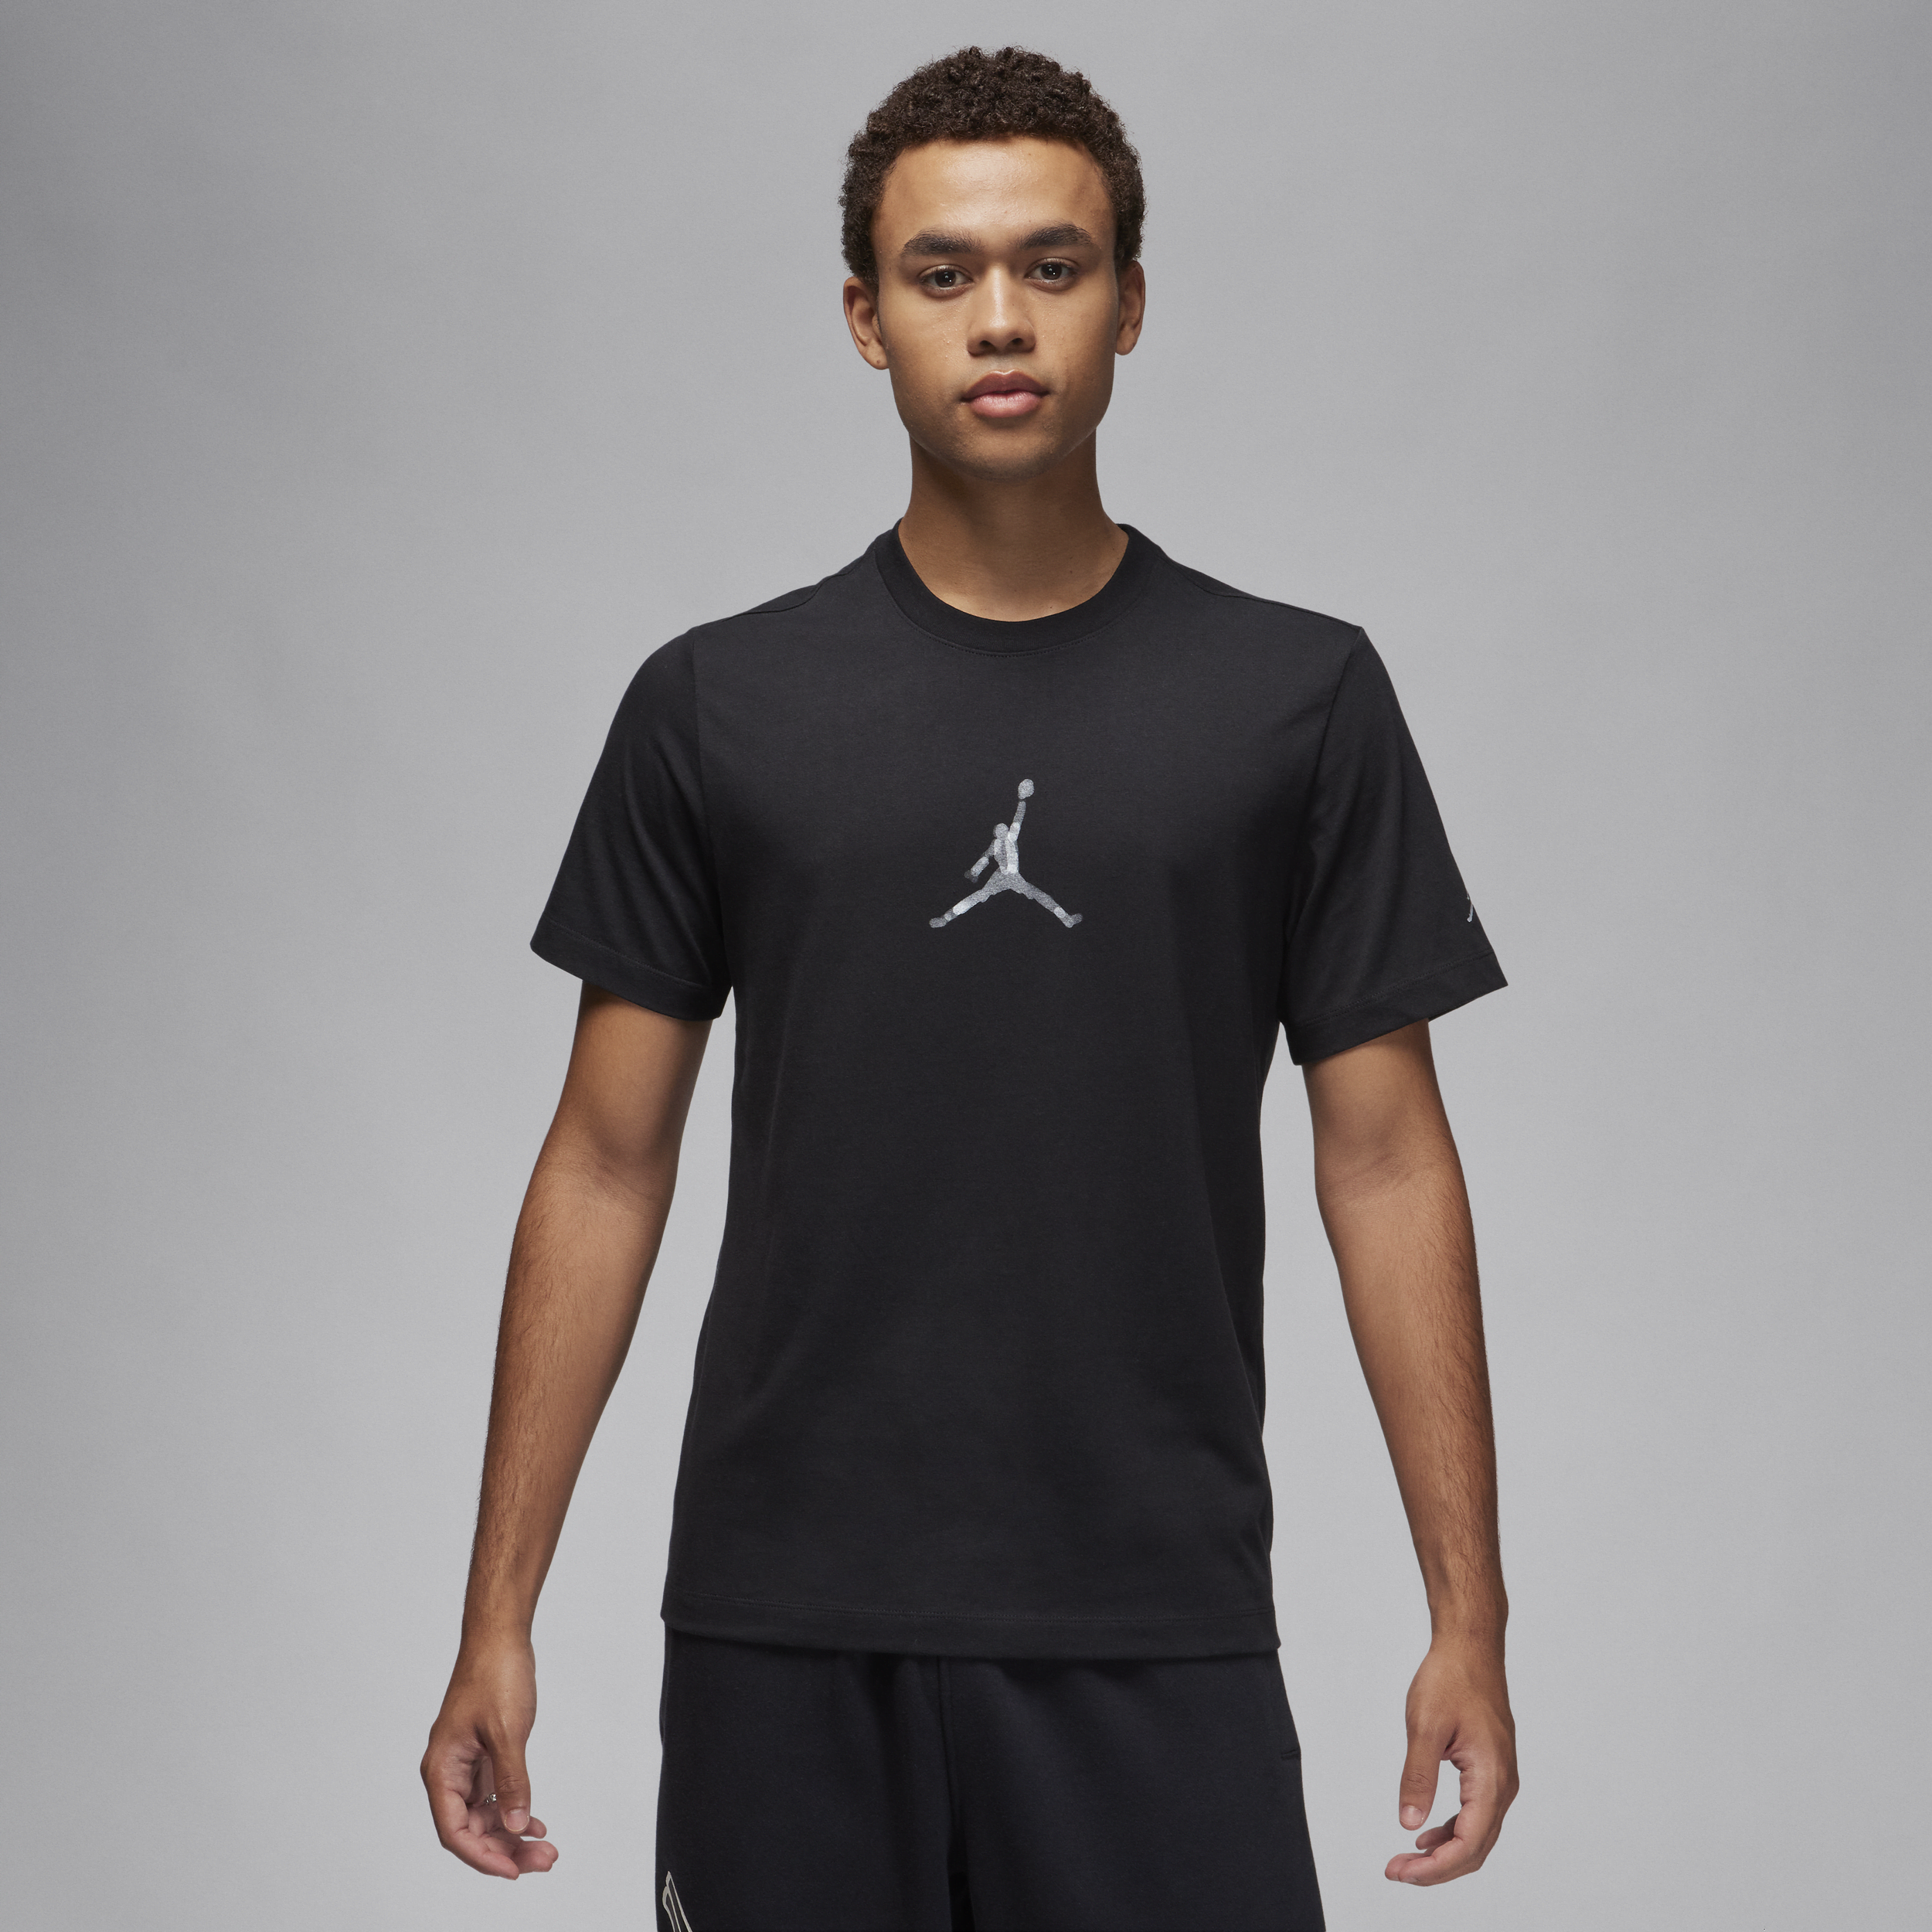 Jordan Brand Camiseta con estampado - Hombre - Negro